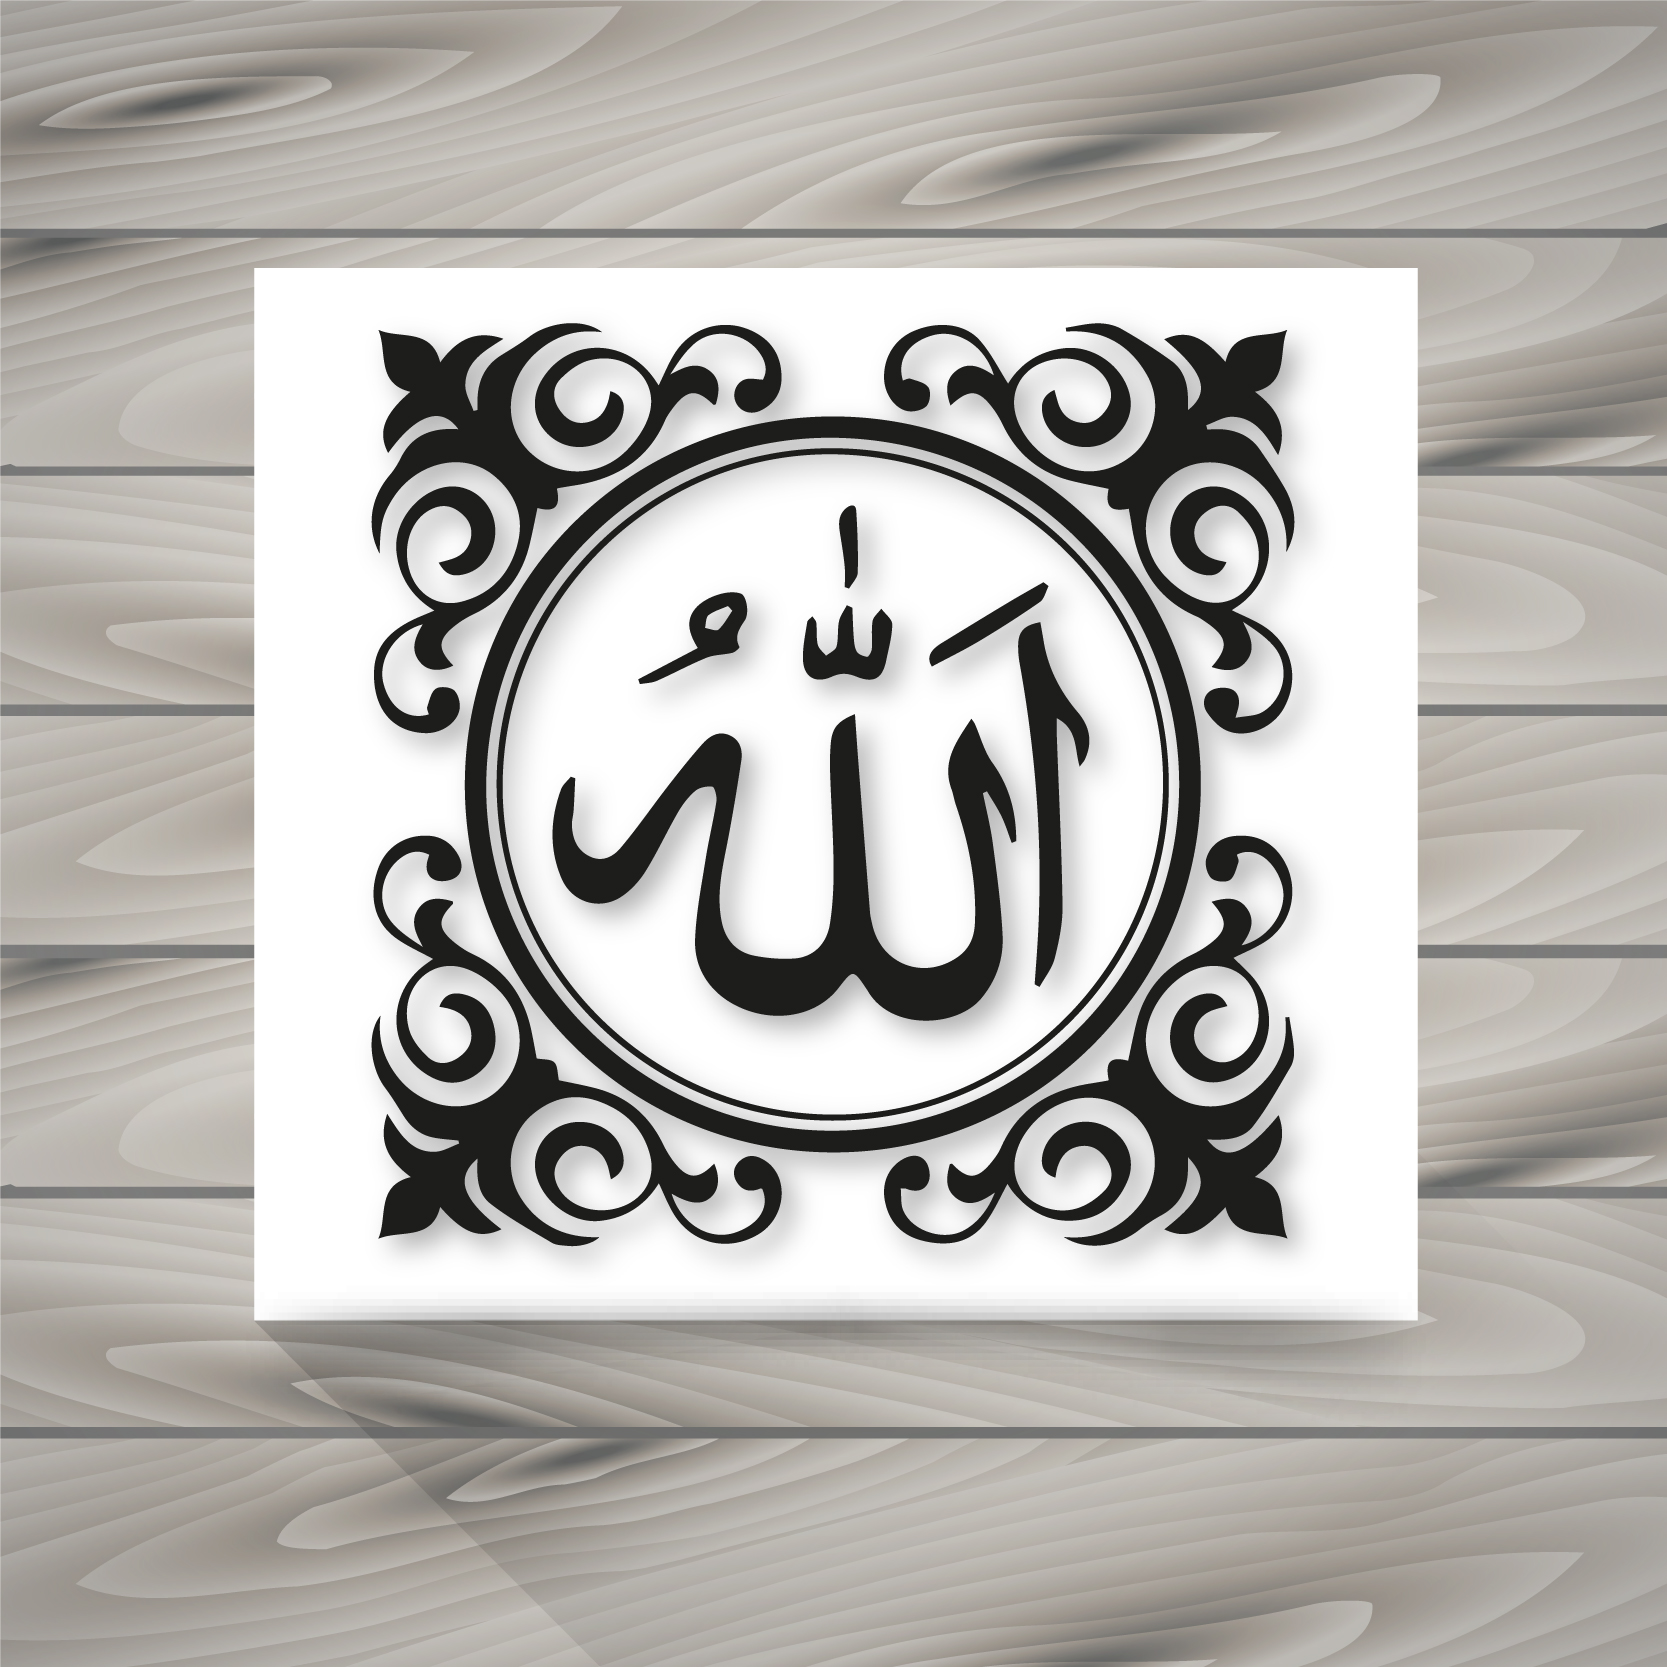  Calligraphie  arabe d Allah  Telecharger Vectoriel Gratuit 